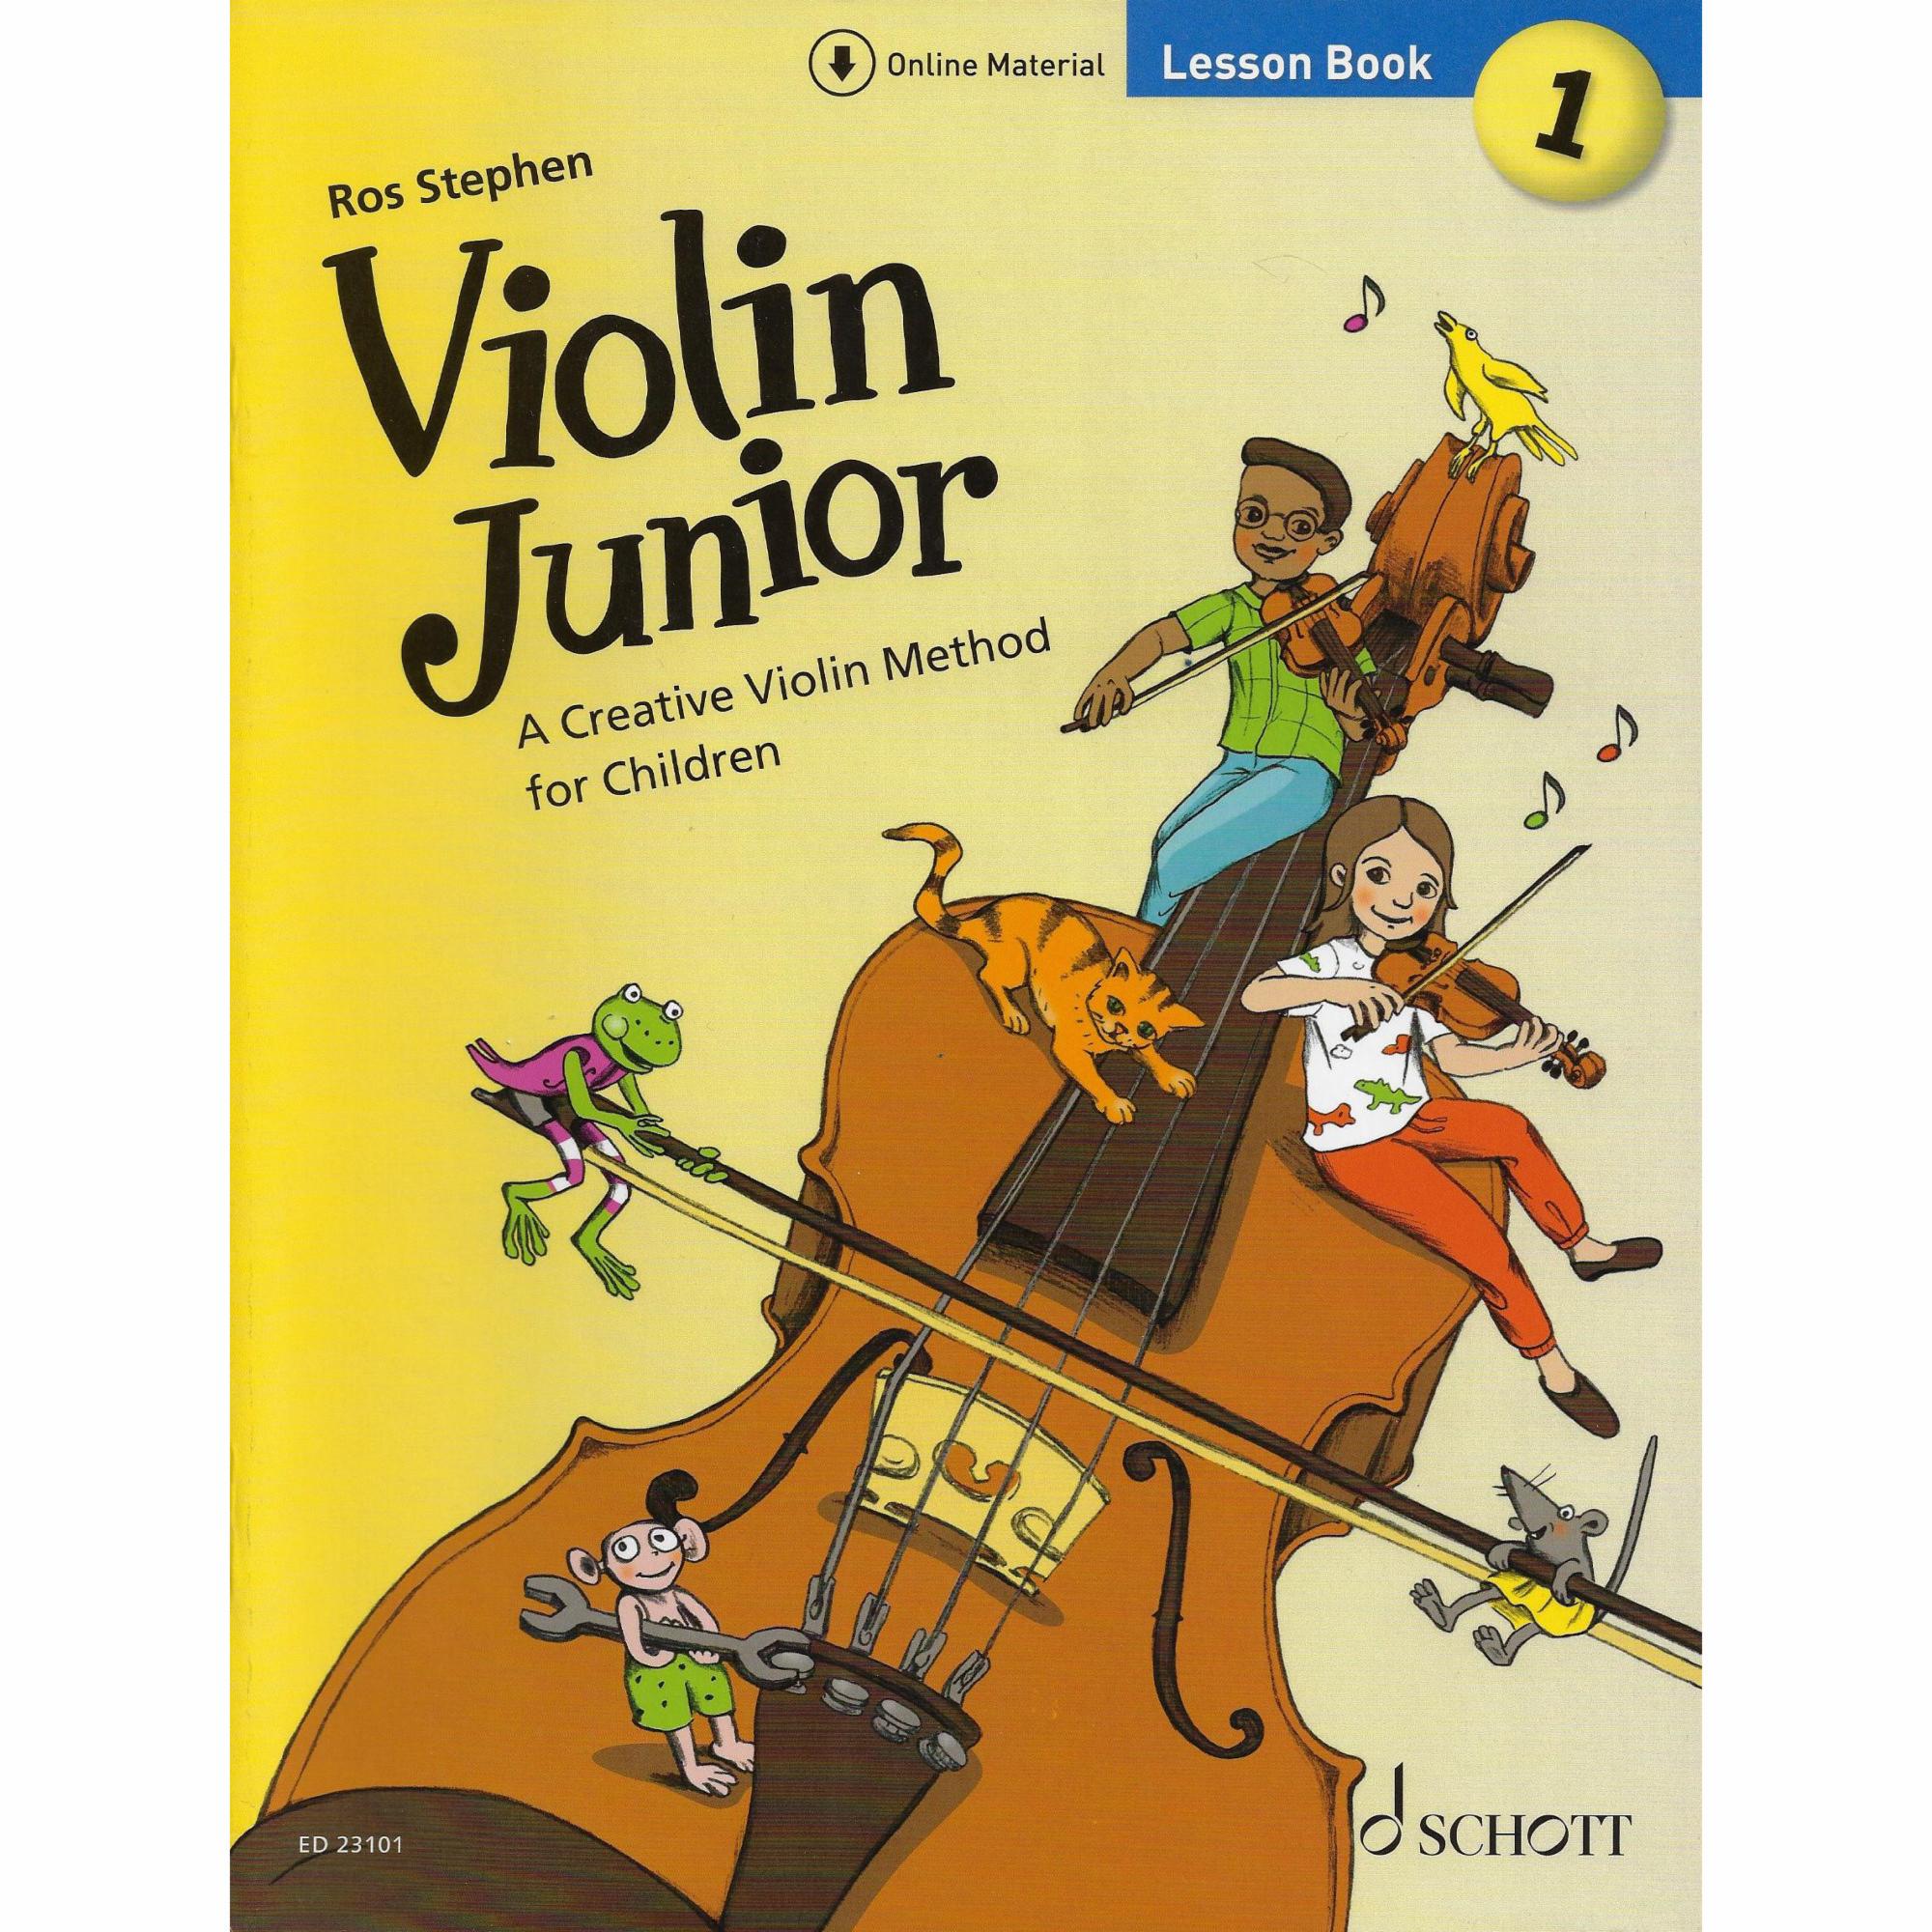 Violin Junior